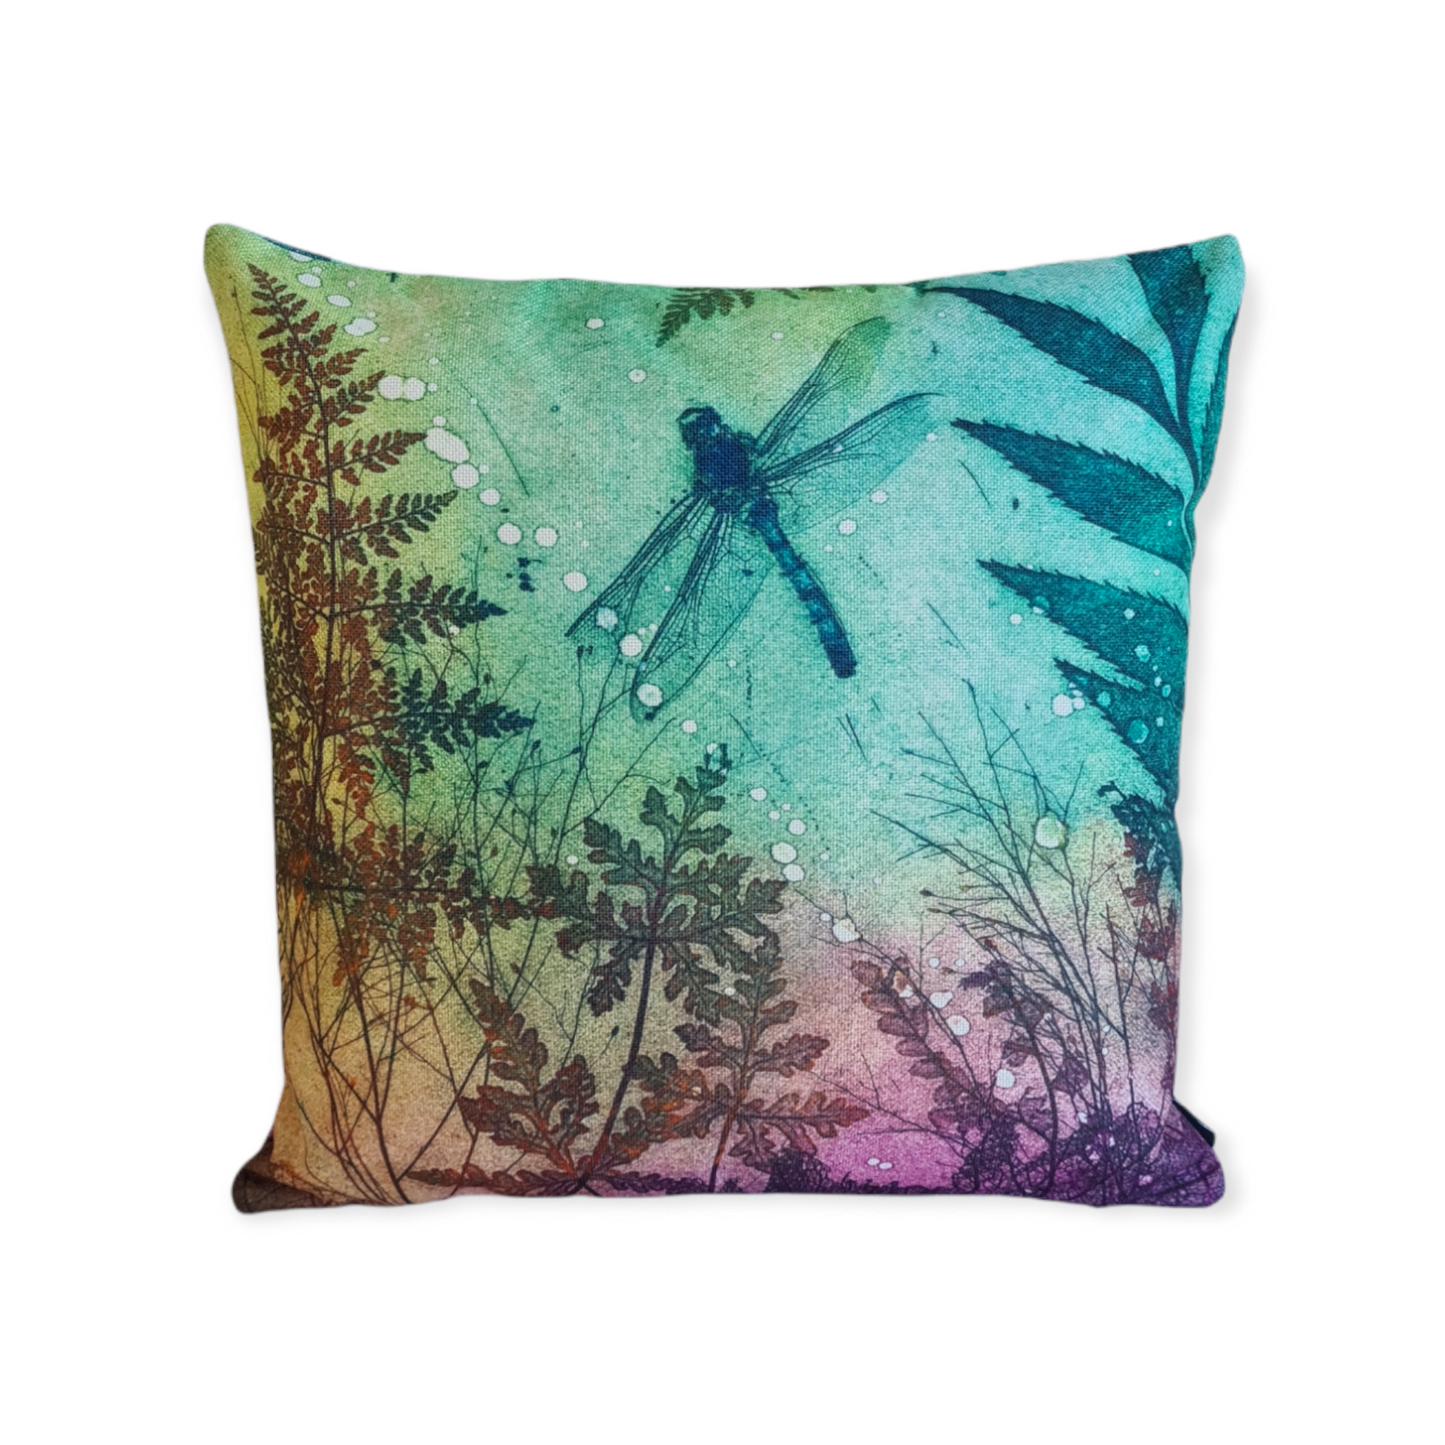 Fern Dragonfly Cushion Cover